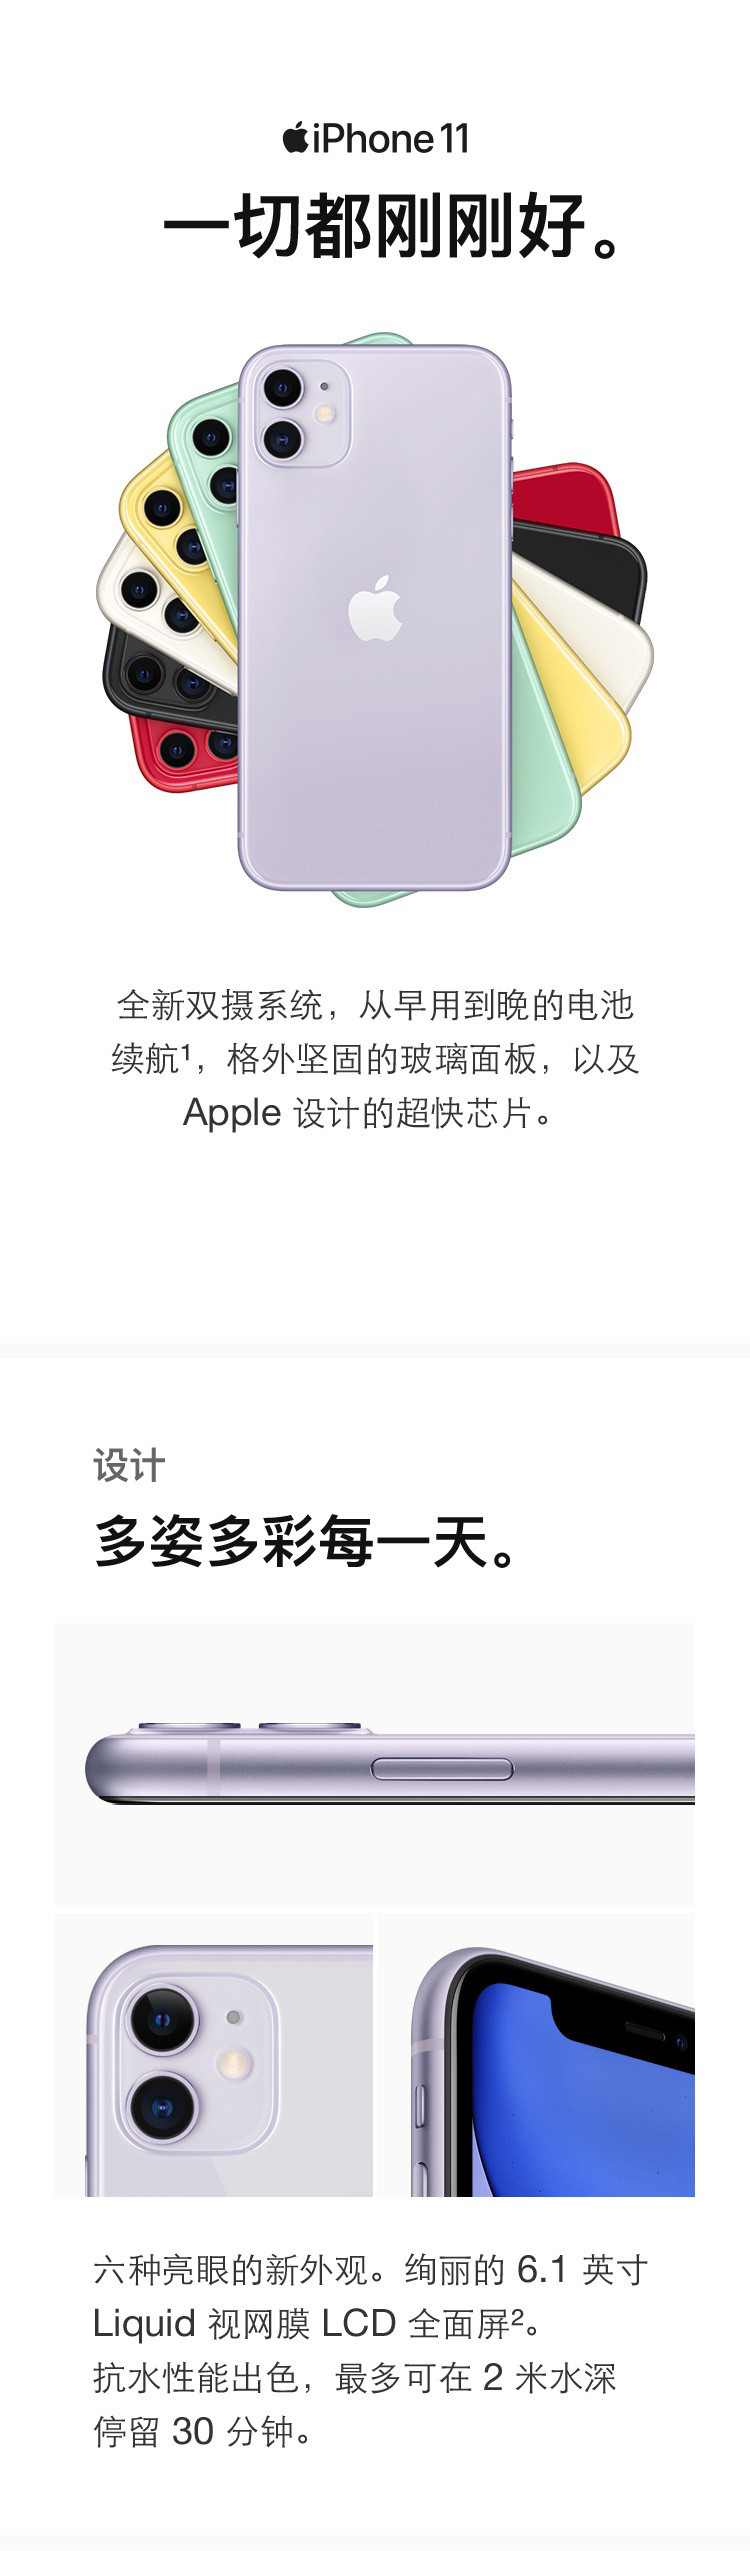 苹果/APPLE iPhone 11 (A2223) 移动联通电信4G手机 双卡双待